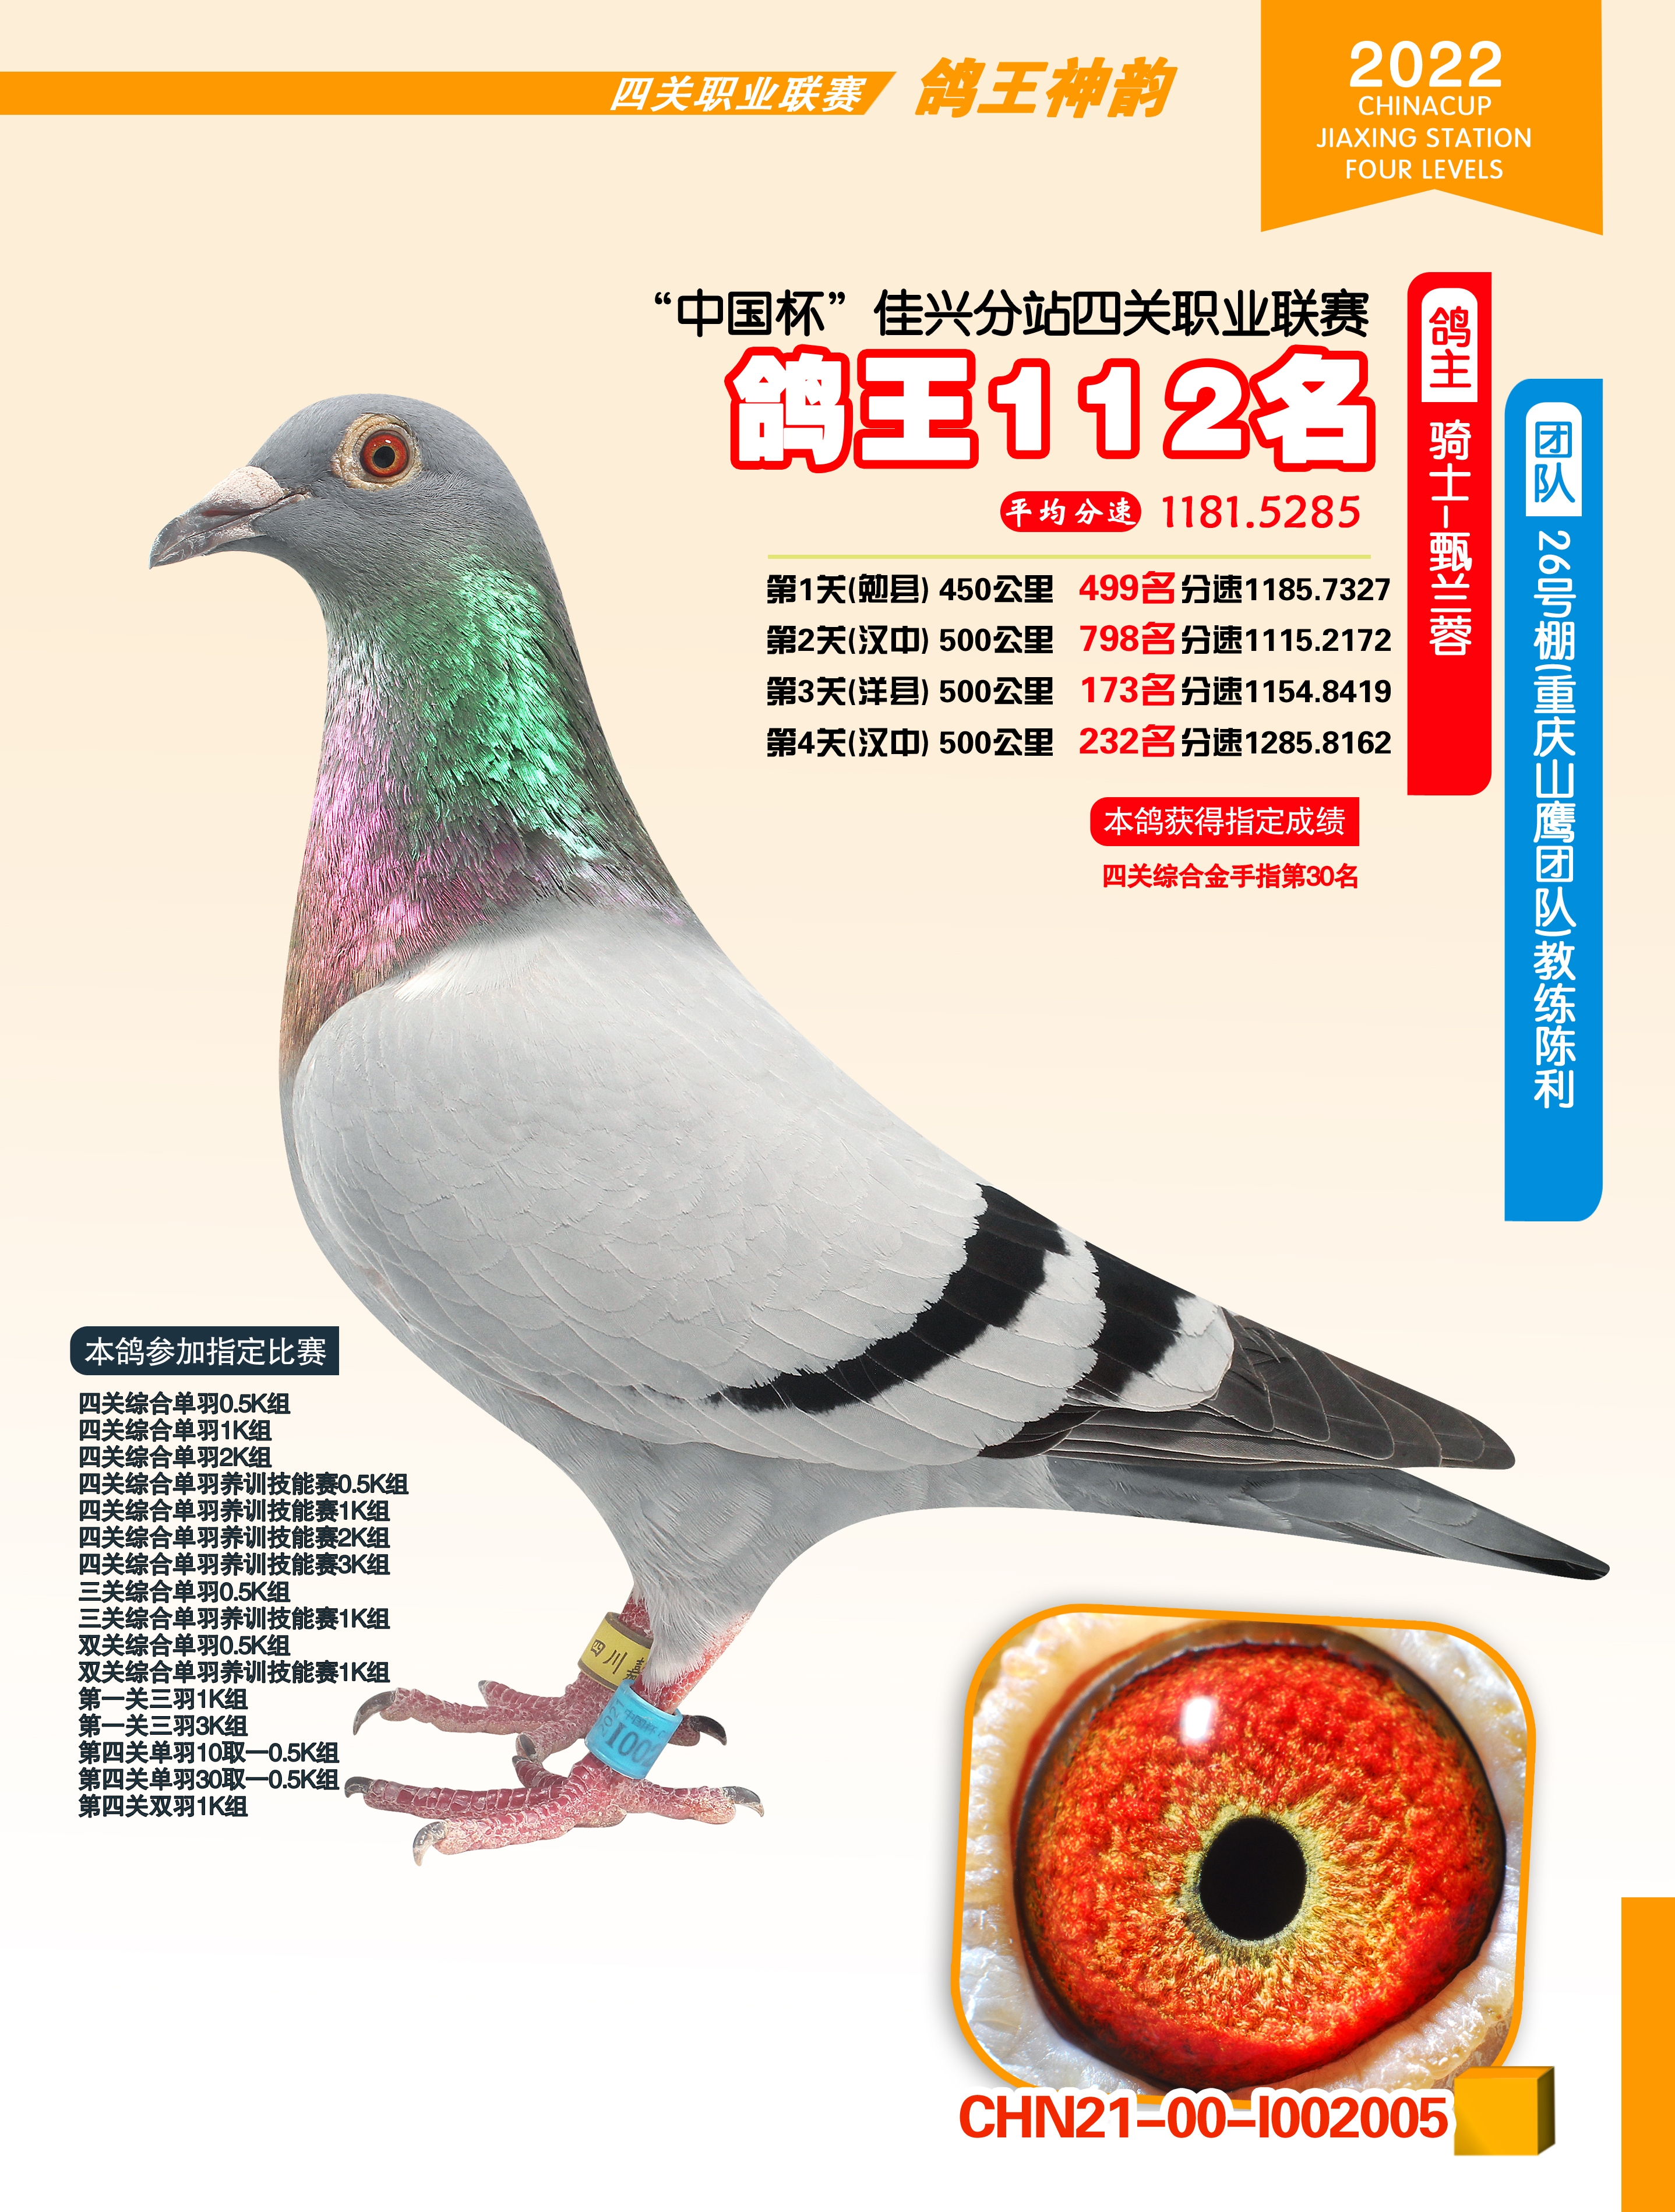 中国杯信鸽专用环2020图片